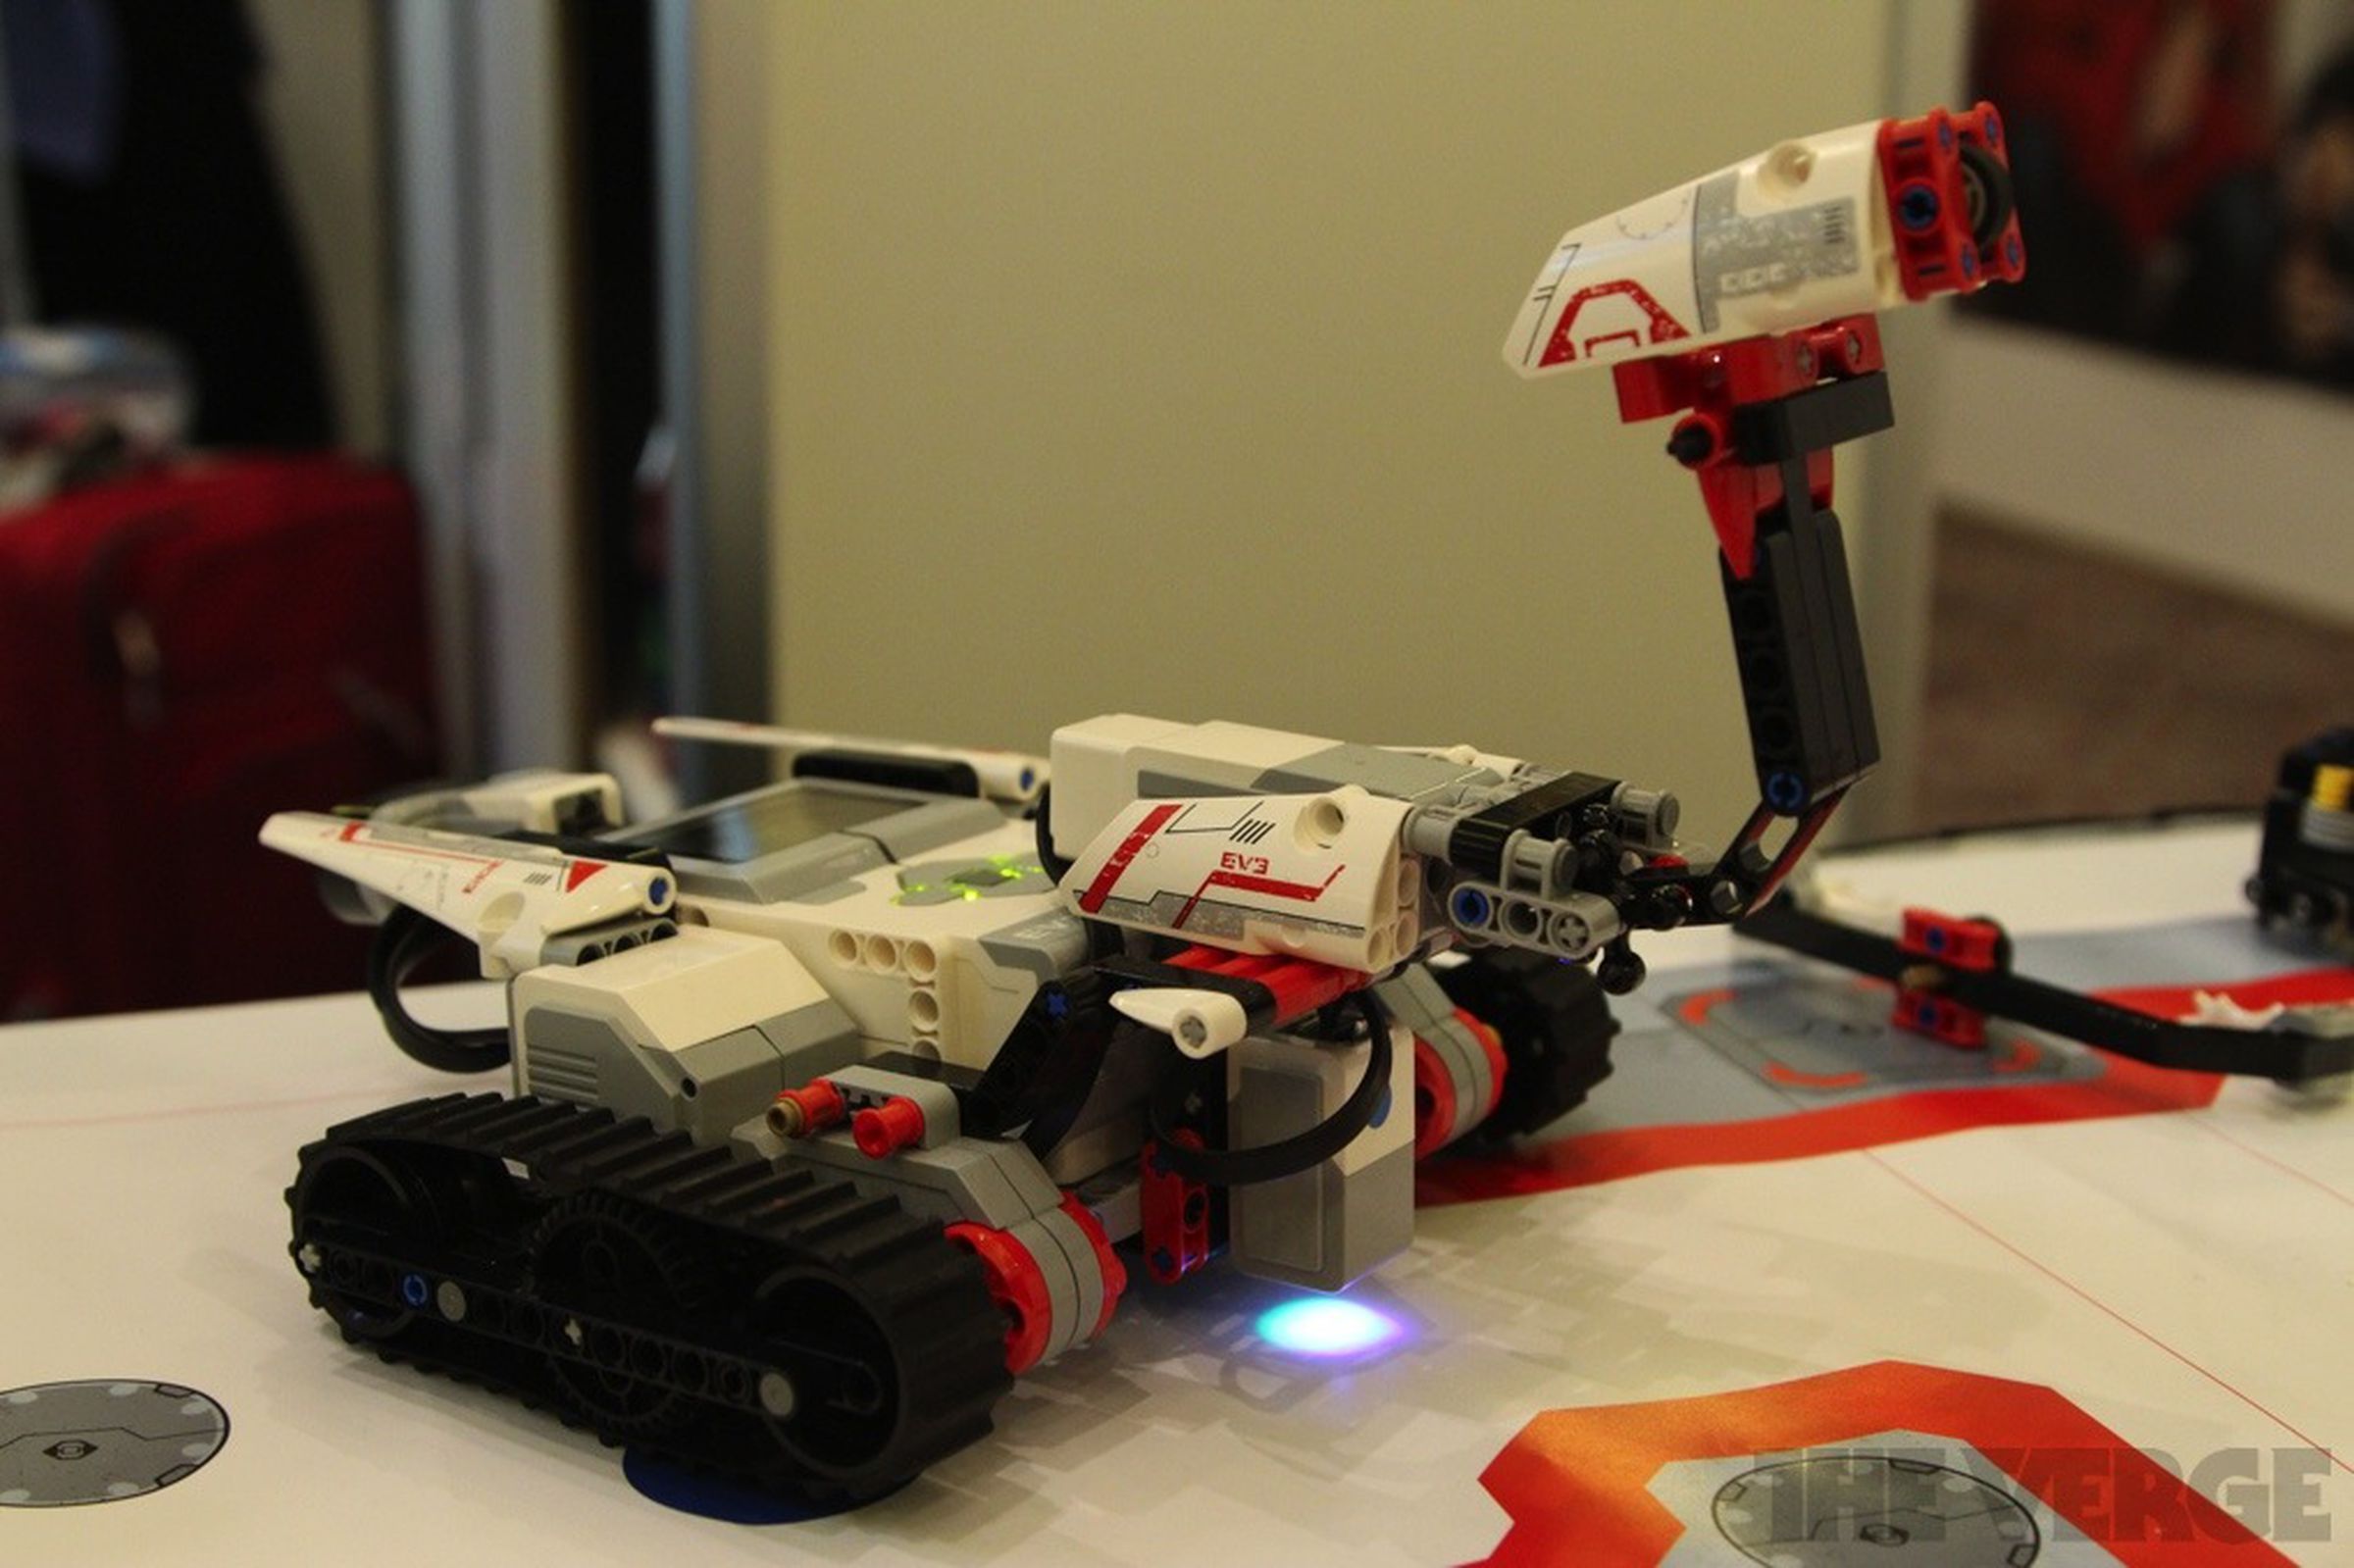 Lego Mindstorms EV3 pictures